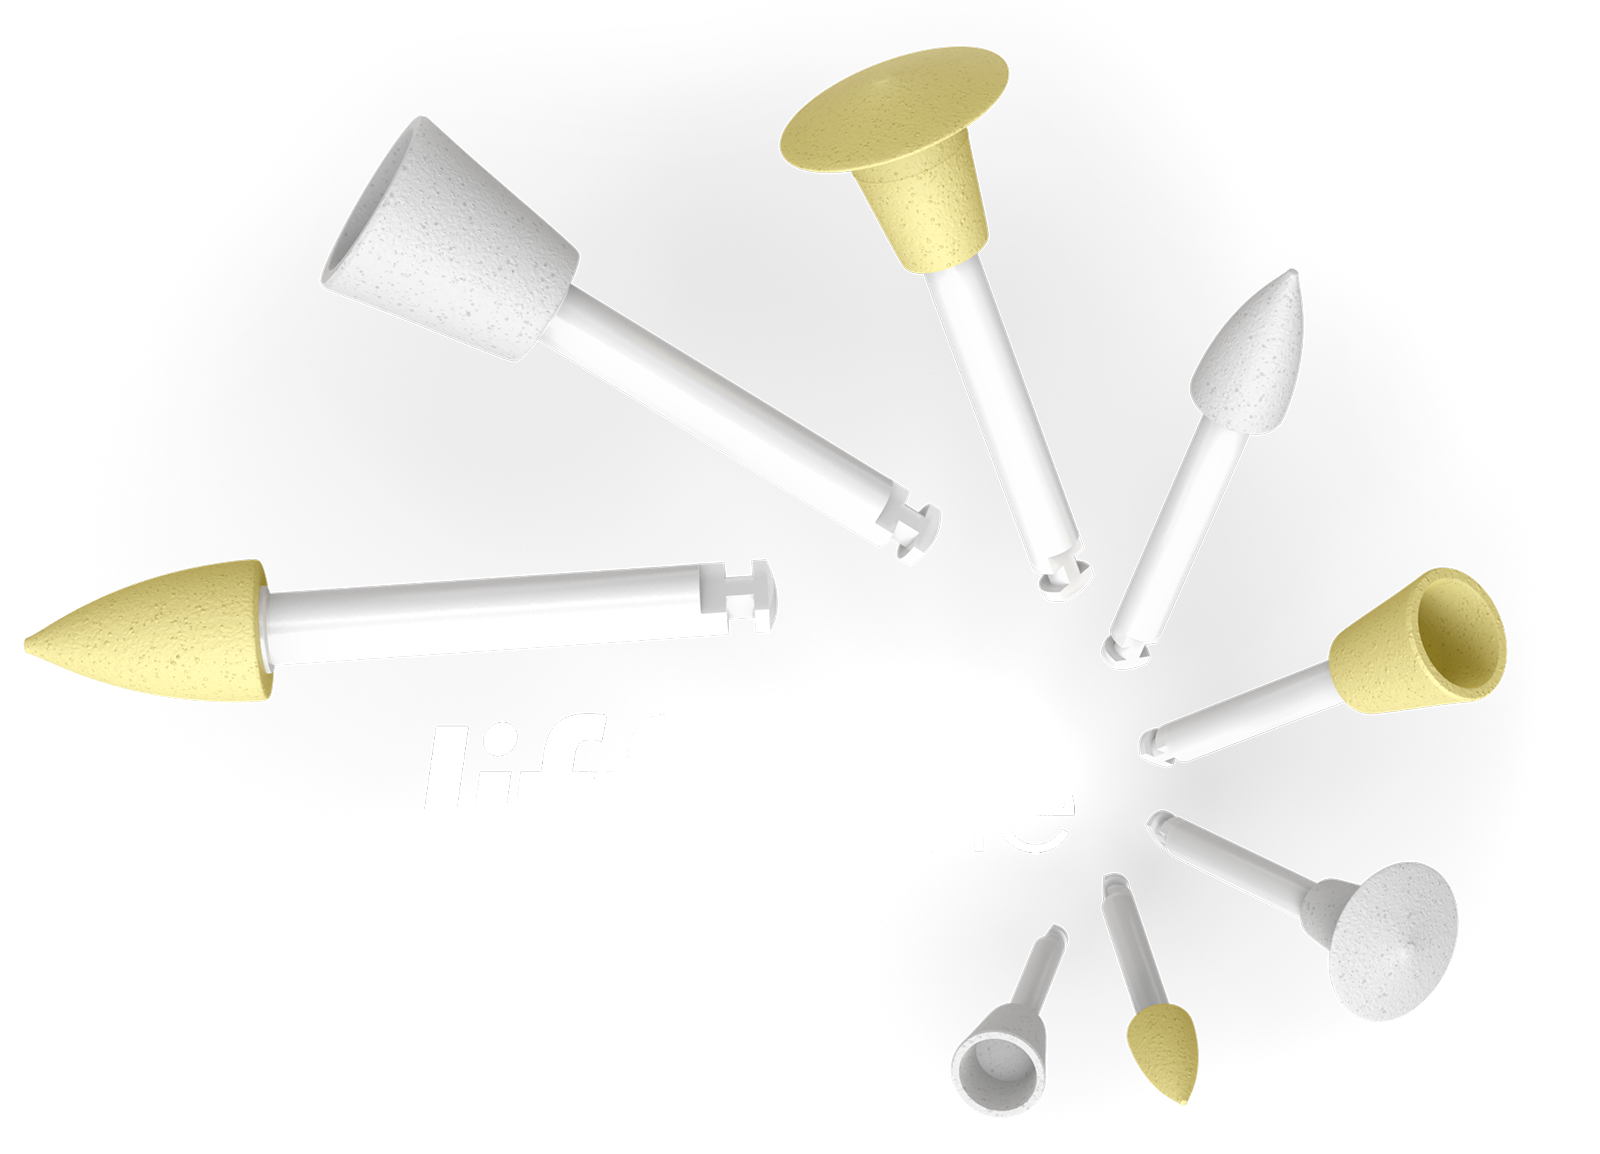 Jiffy™ One Single-Use Polishers